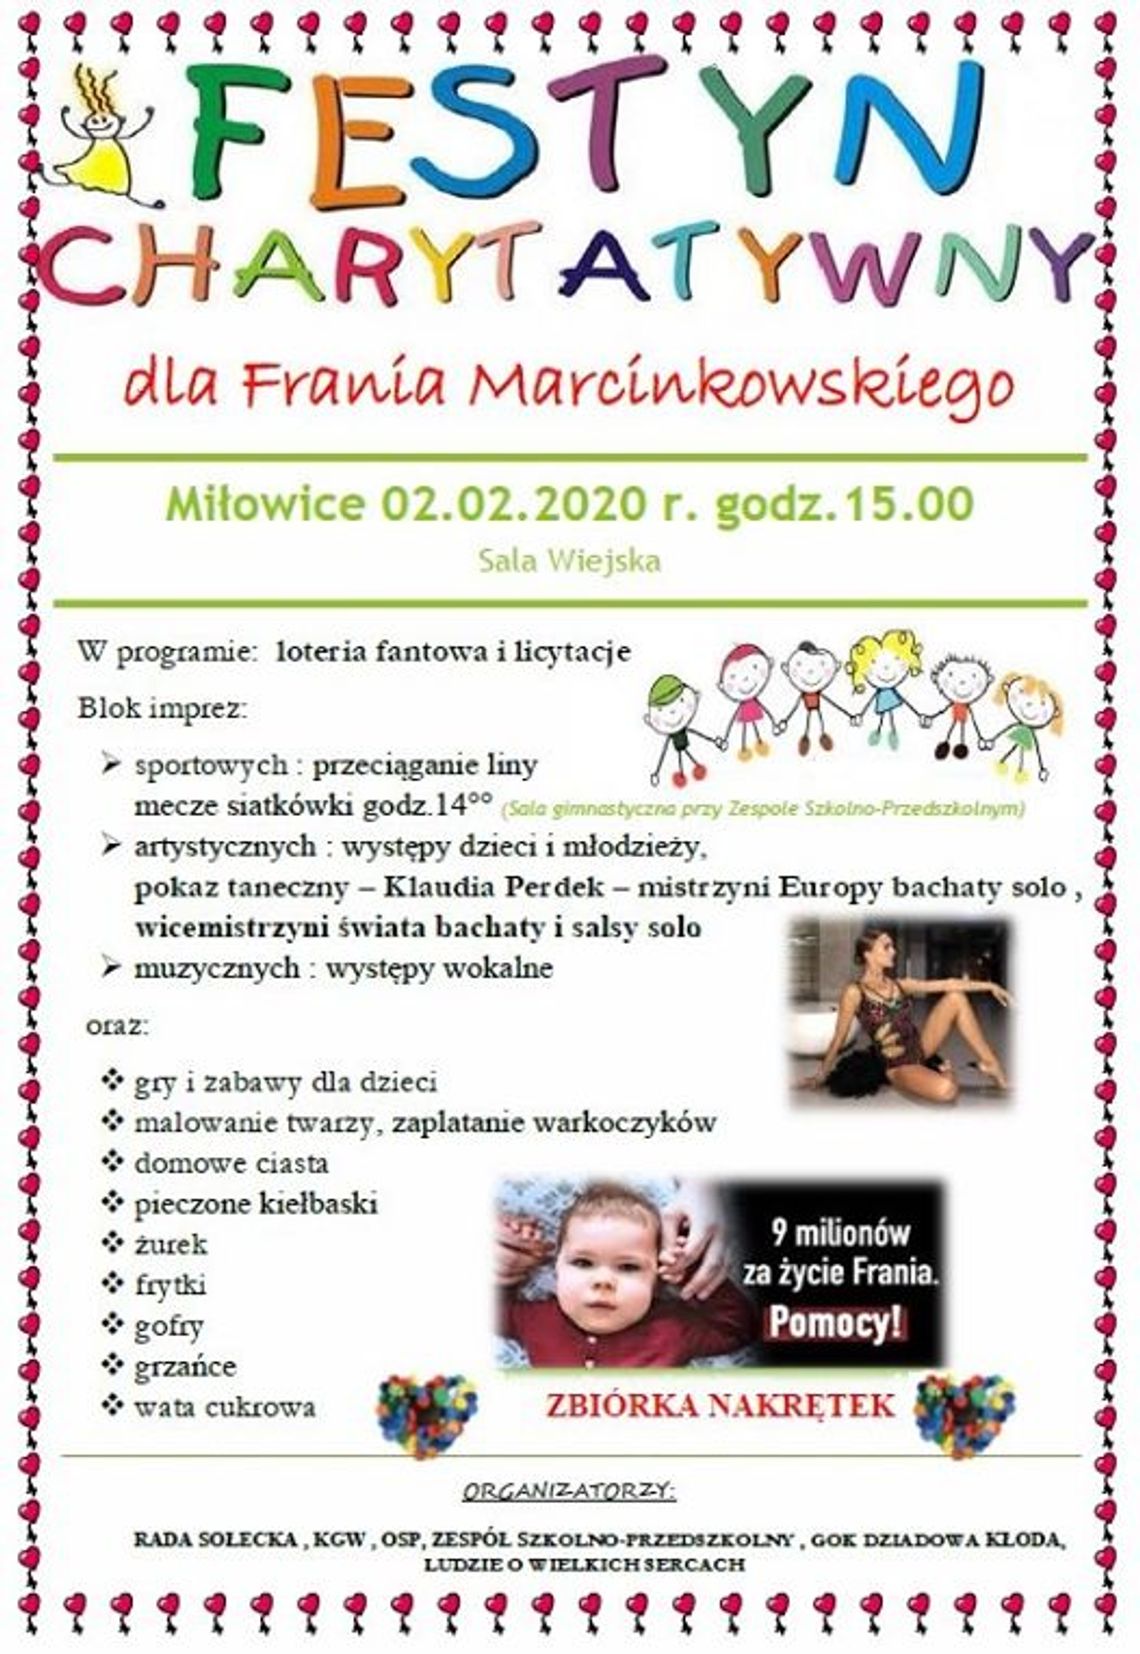 Festyn charytatywny dla Frania Marcinkowskiego